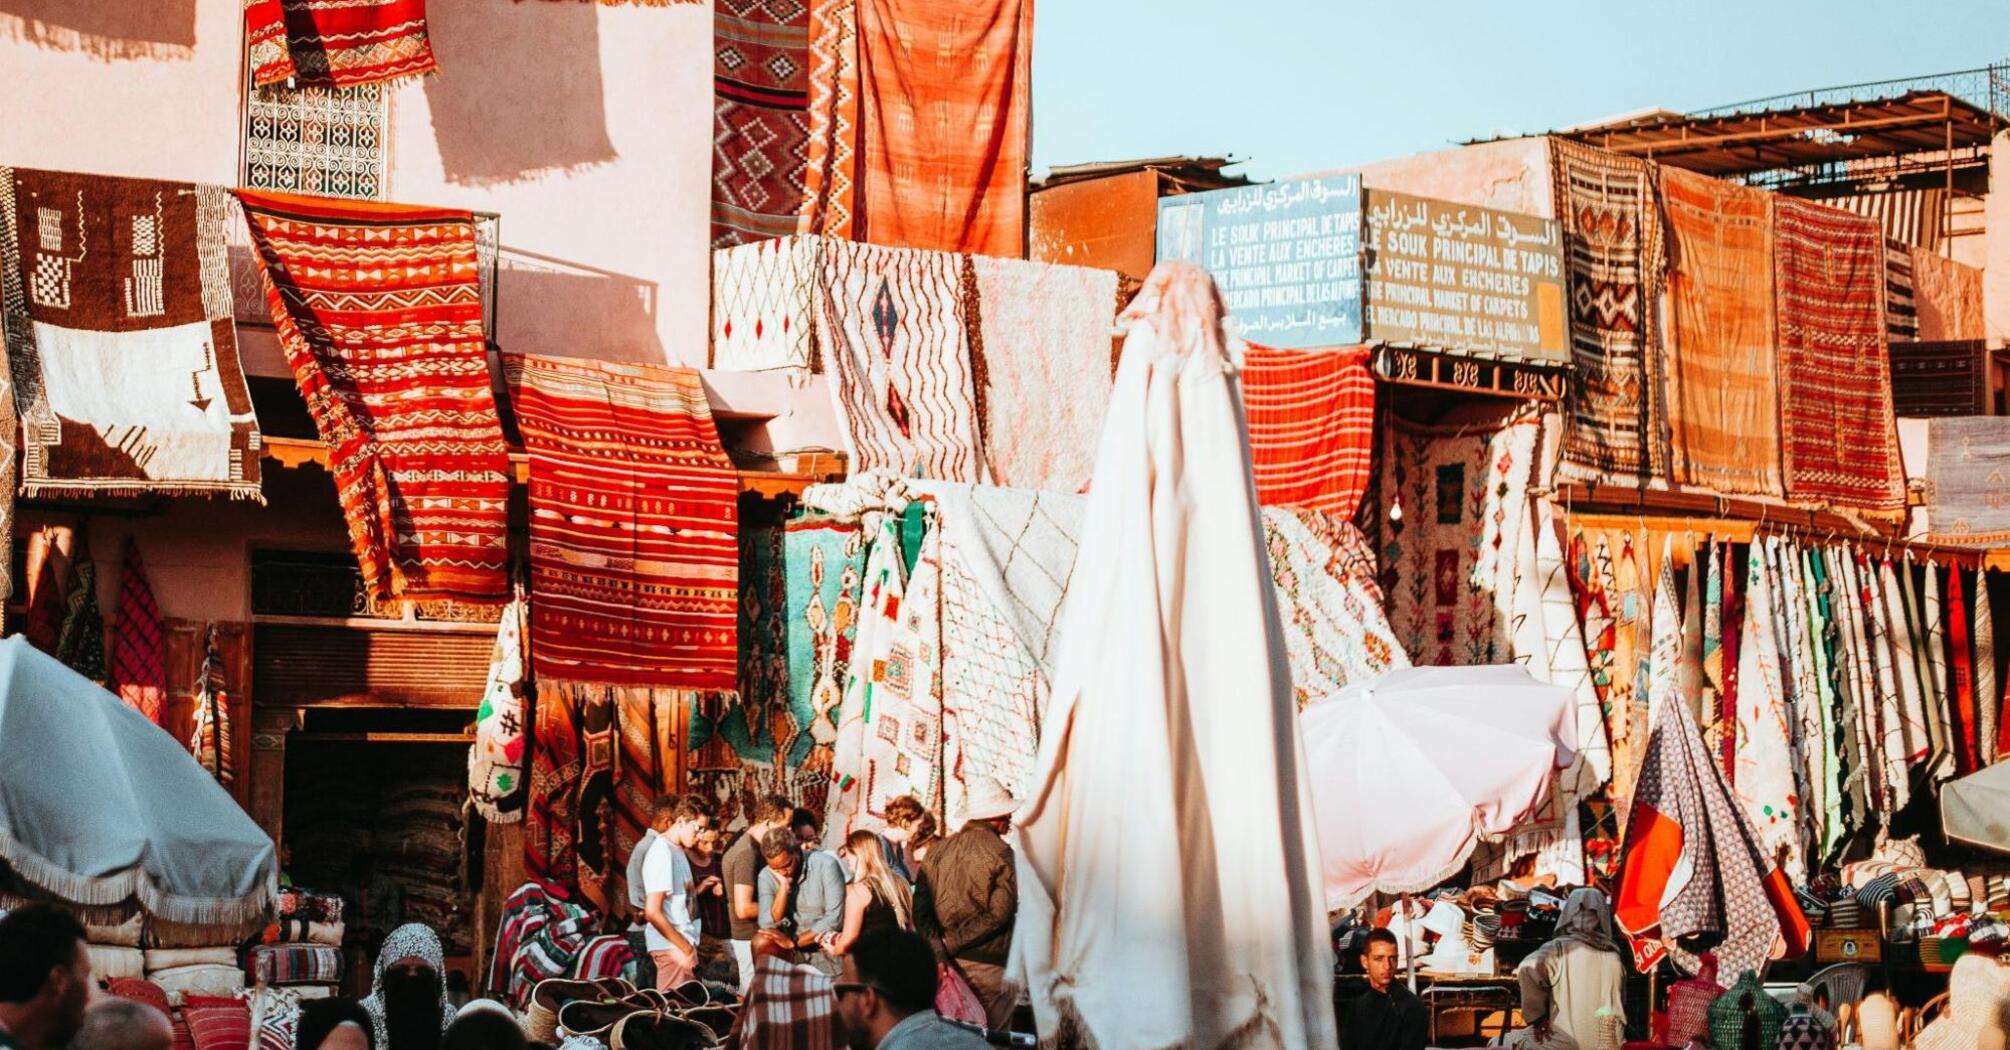 Rug sales in Marrakesh